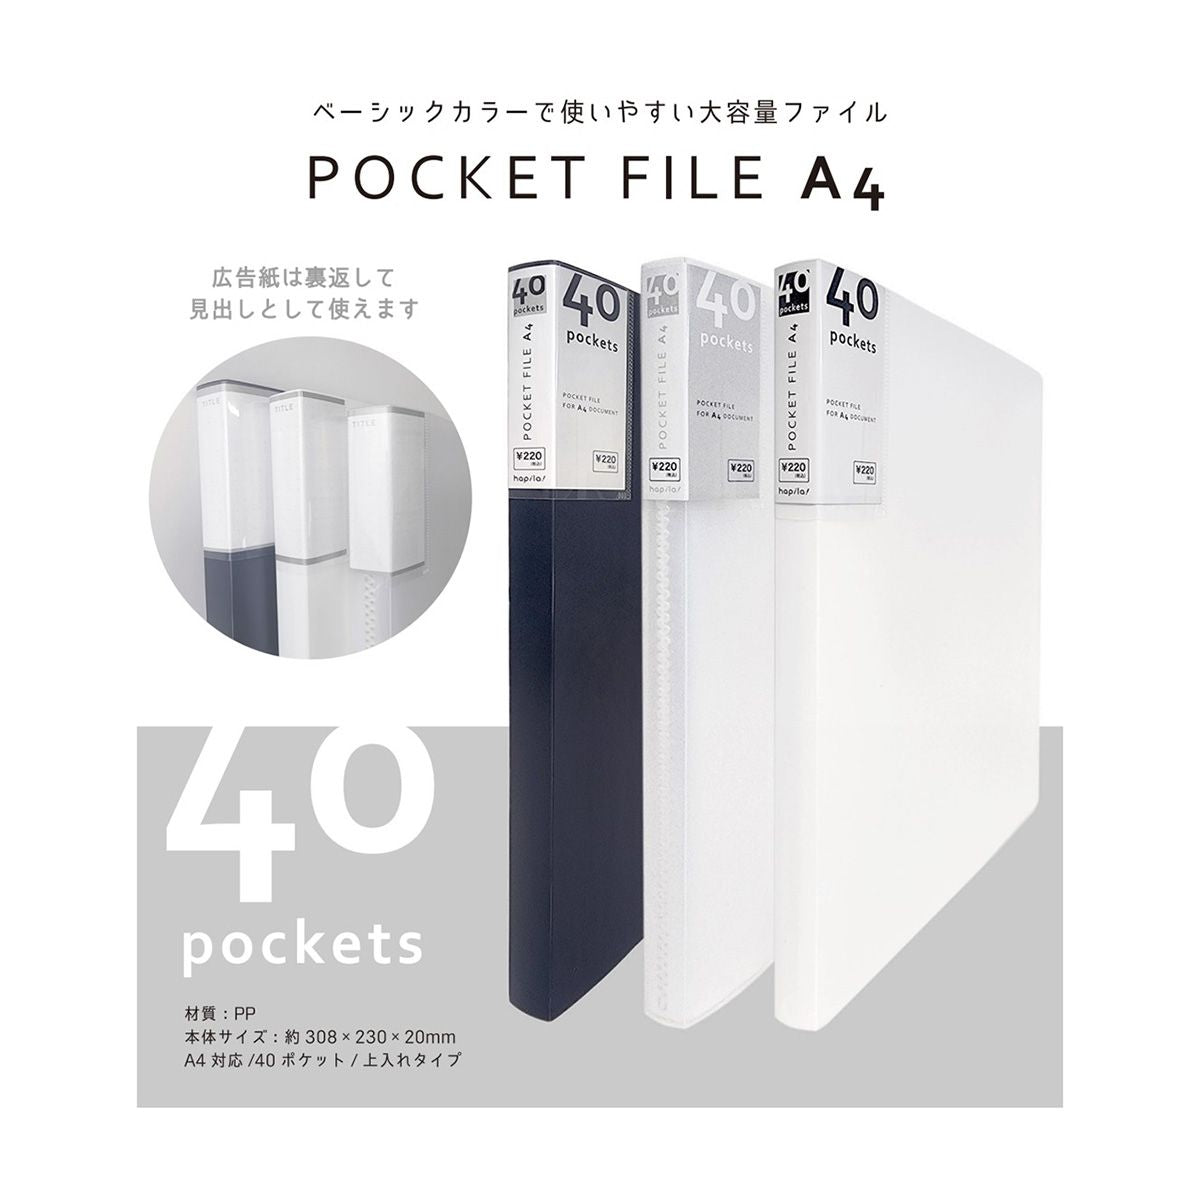 ポケットファイル クリアーファイル A4 40P ホワイト/CF40A4WH 9001/340587